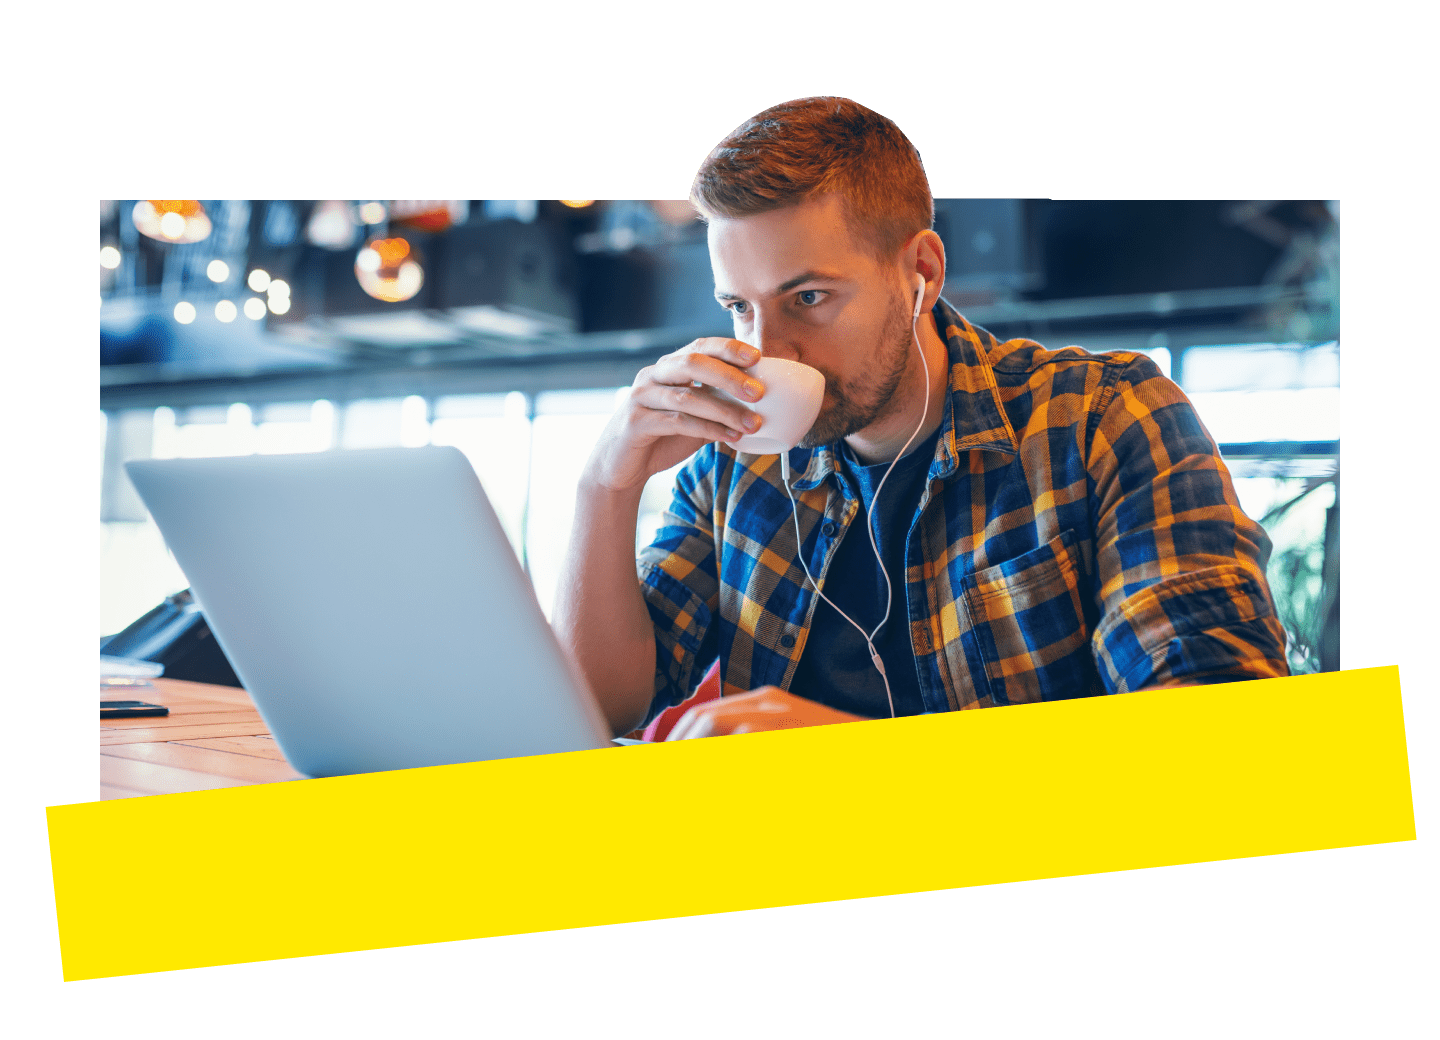 Un empleado que trabaja de forma remota, usando GoTo Connect en una cafetería en su portátil.